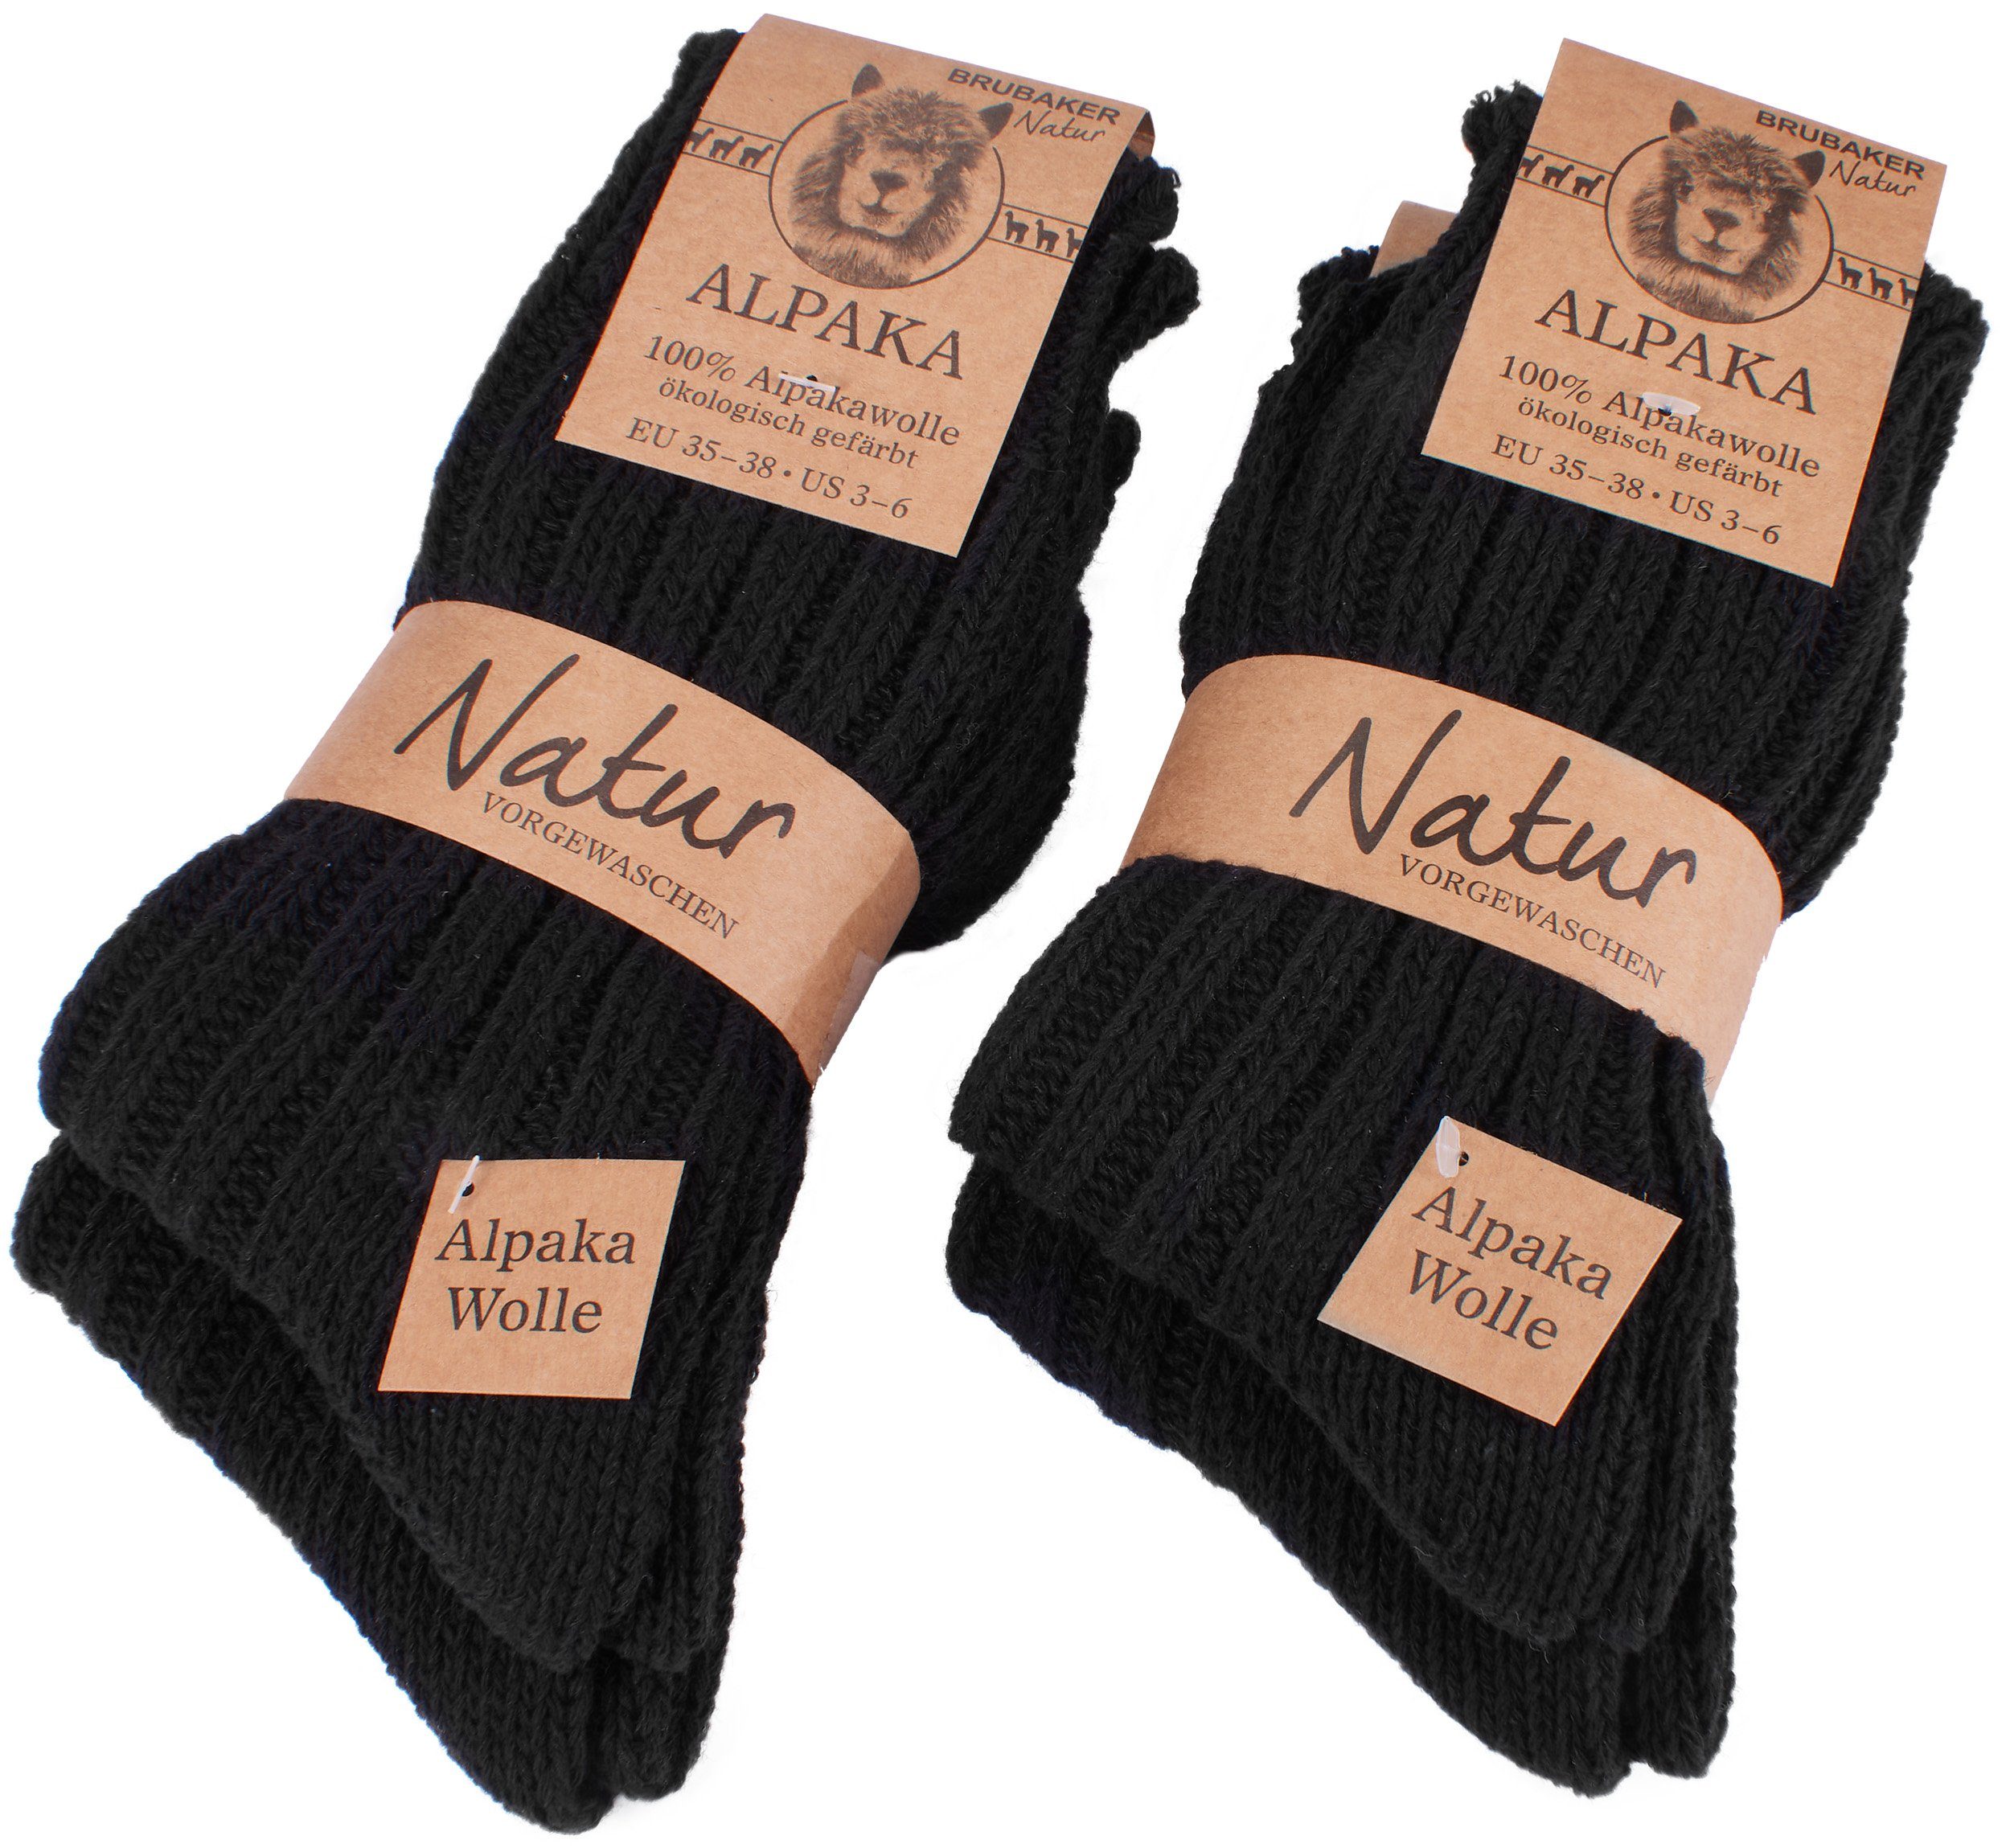 BRUBAKER Kuschelsocken warme dicke Alpaka Socken (4-Paar, 100% Alpakawolle)  Wintersocken für Damen und Herren